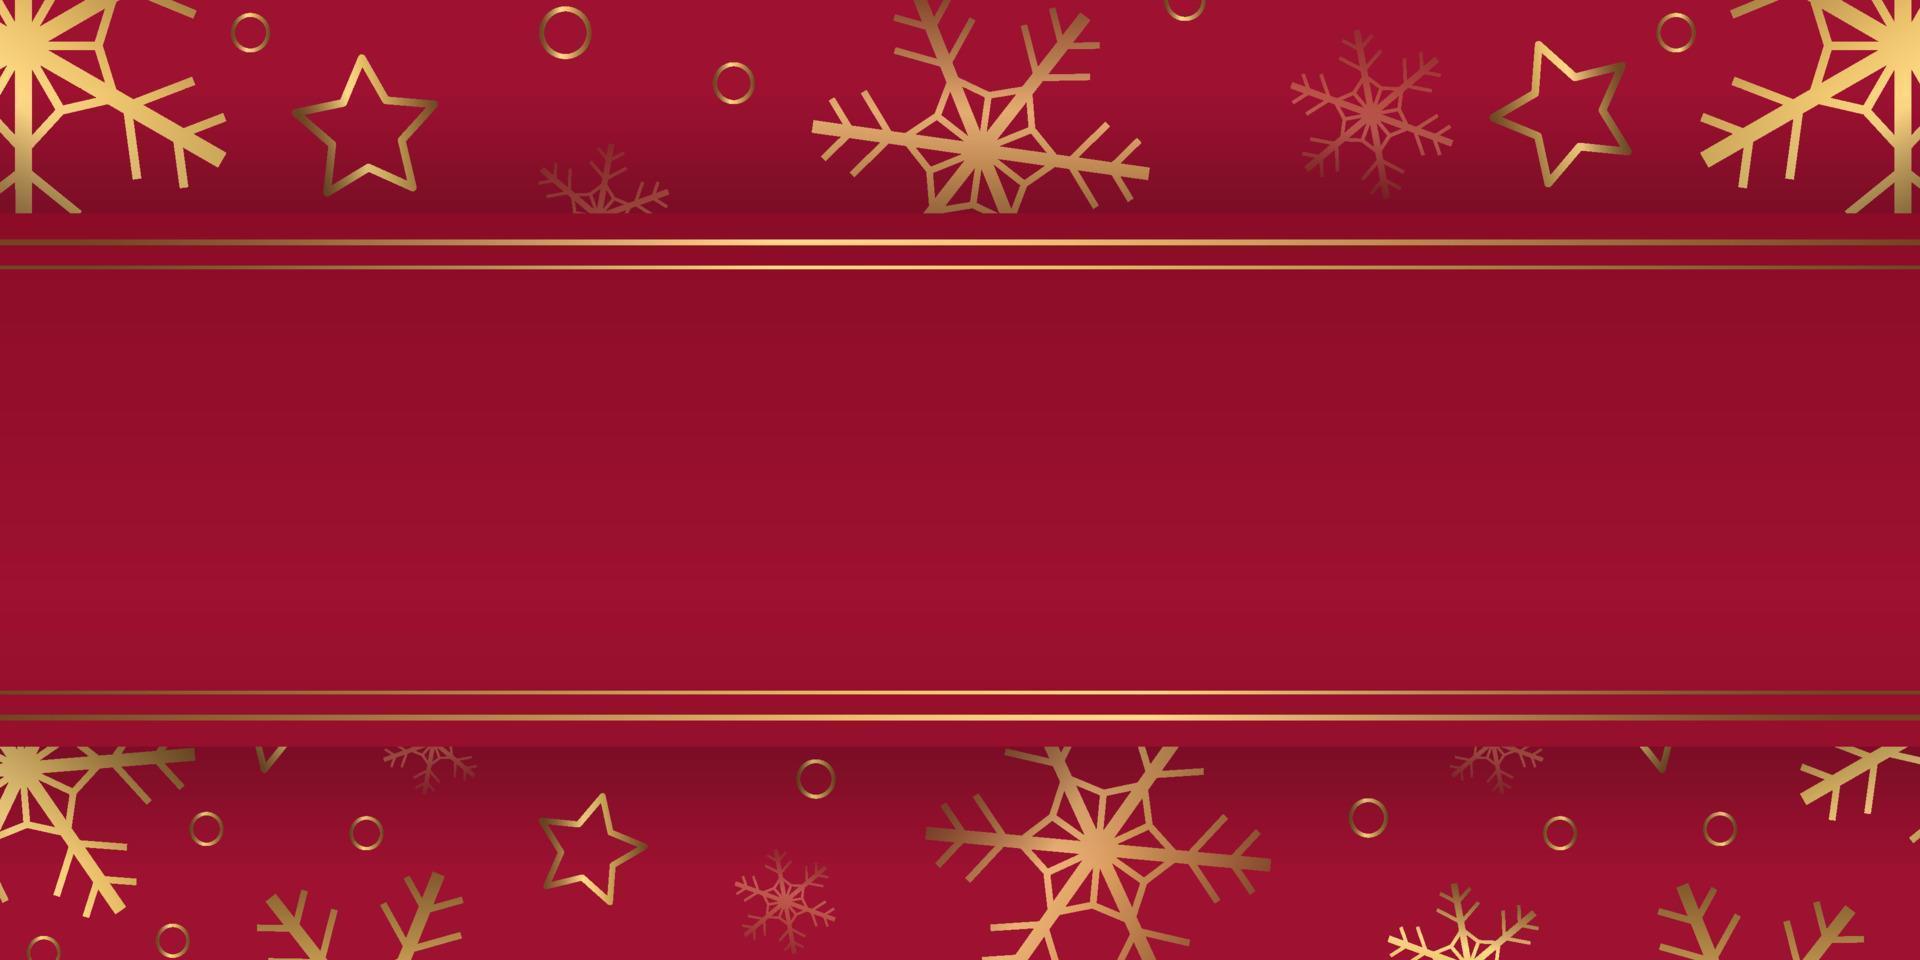 bannière d'hiver de vecteur avec des flocons de neige d'or, des étoiles, des anneaux sur fond rouge. toile de fond horizontale avec fond.